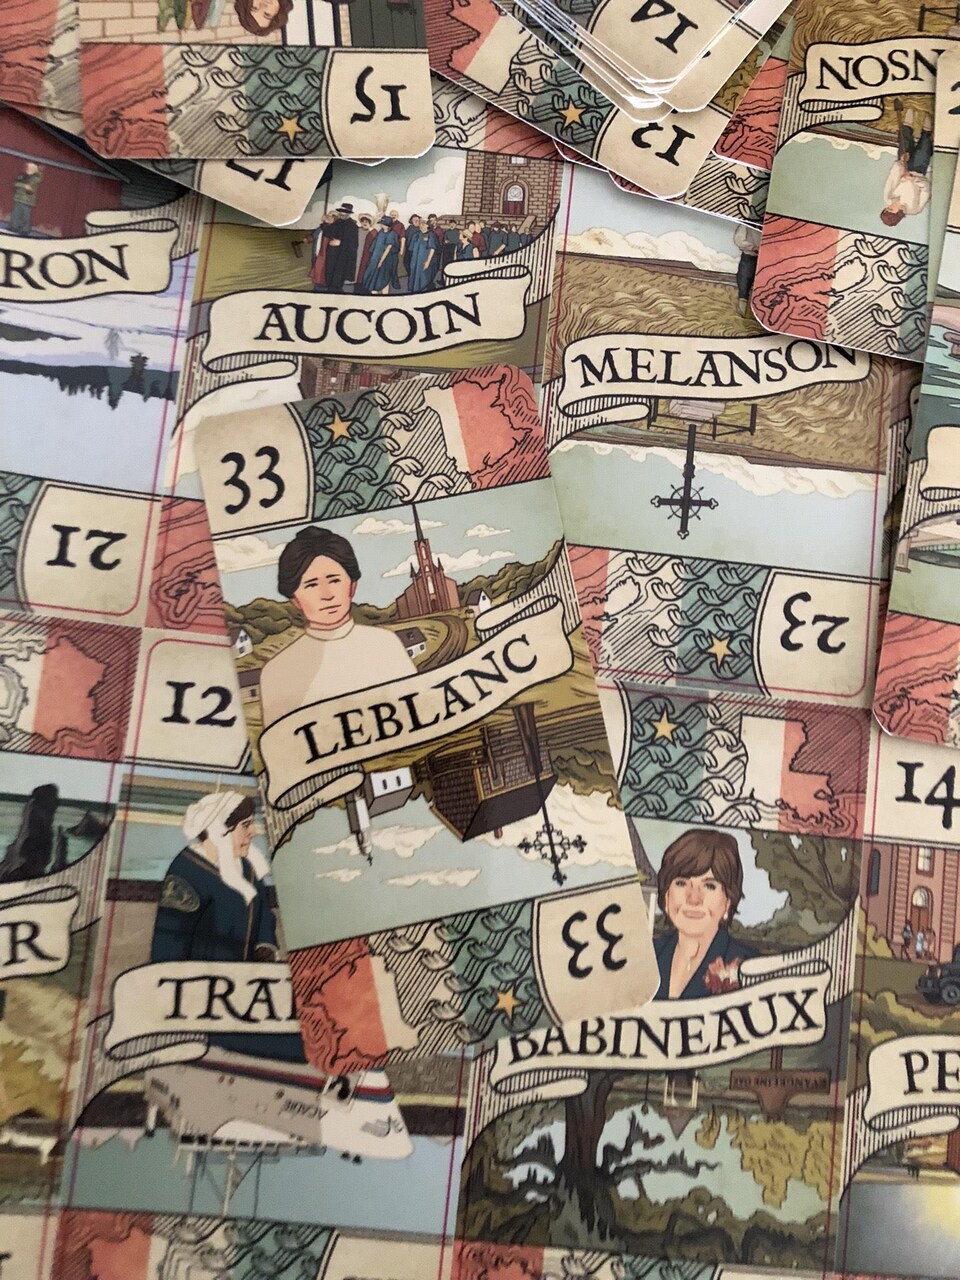 Des cartes sur une table avec des noms comme « LeBlanc », « Babineau » et « Melanson ».